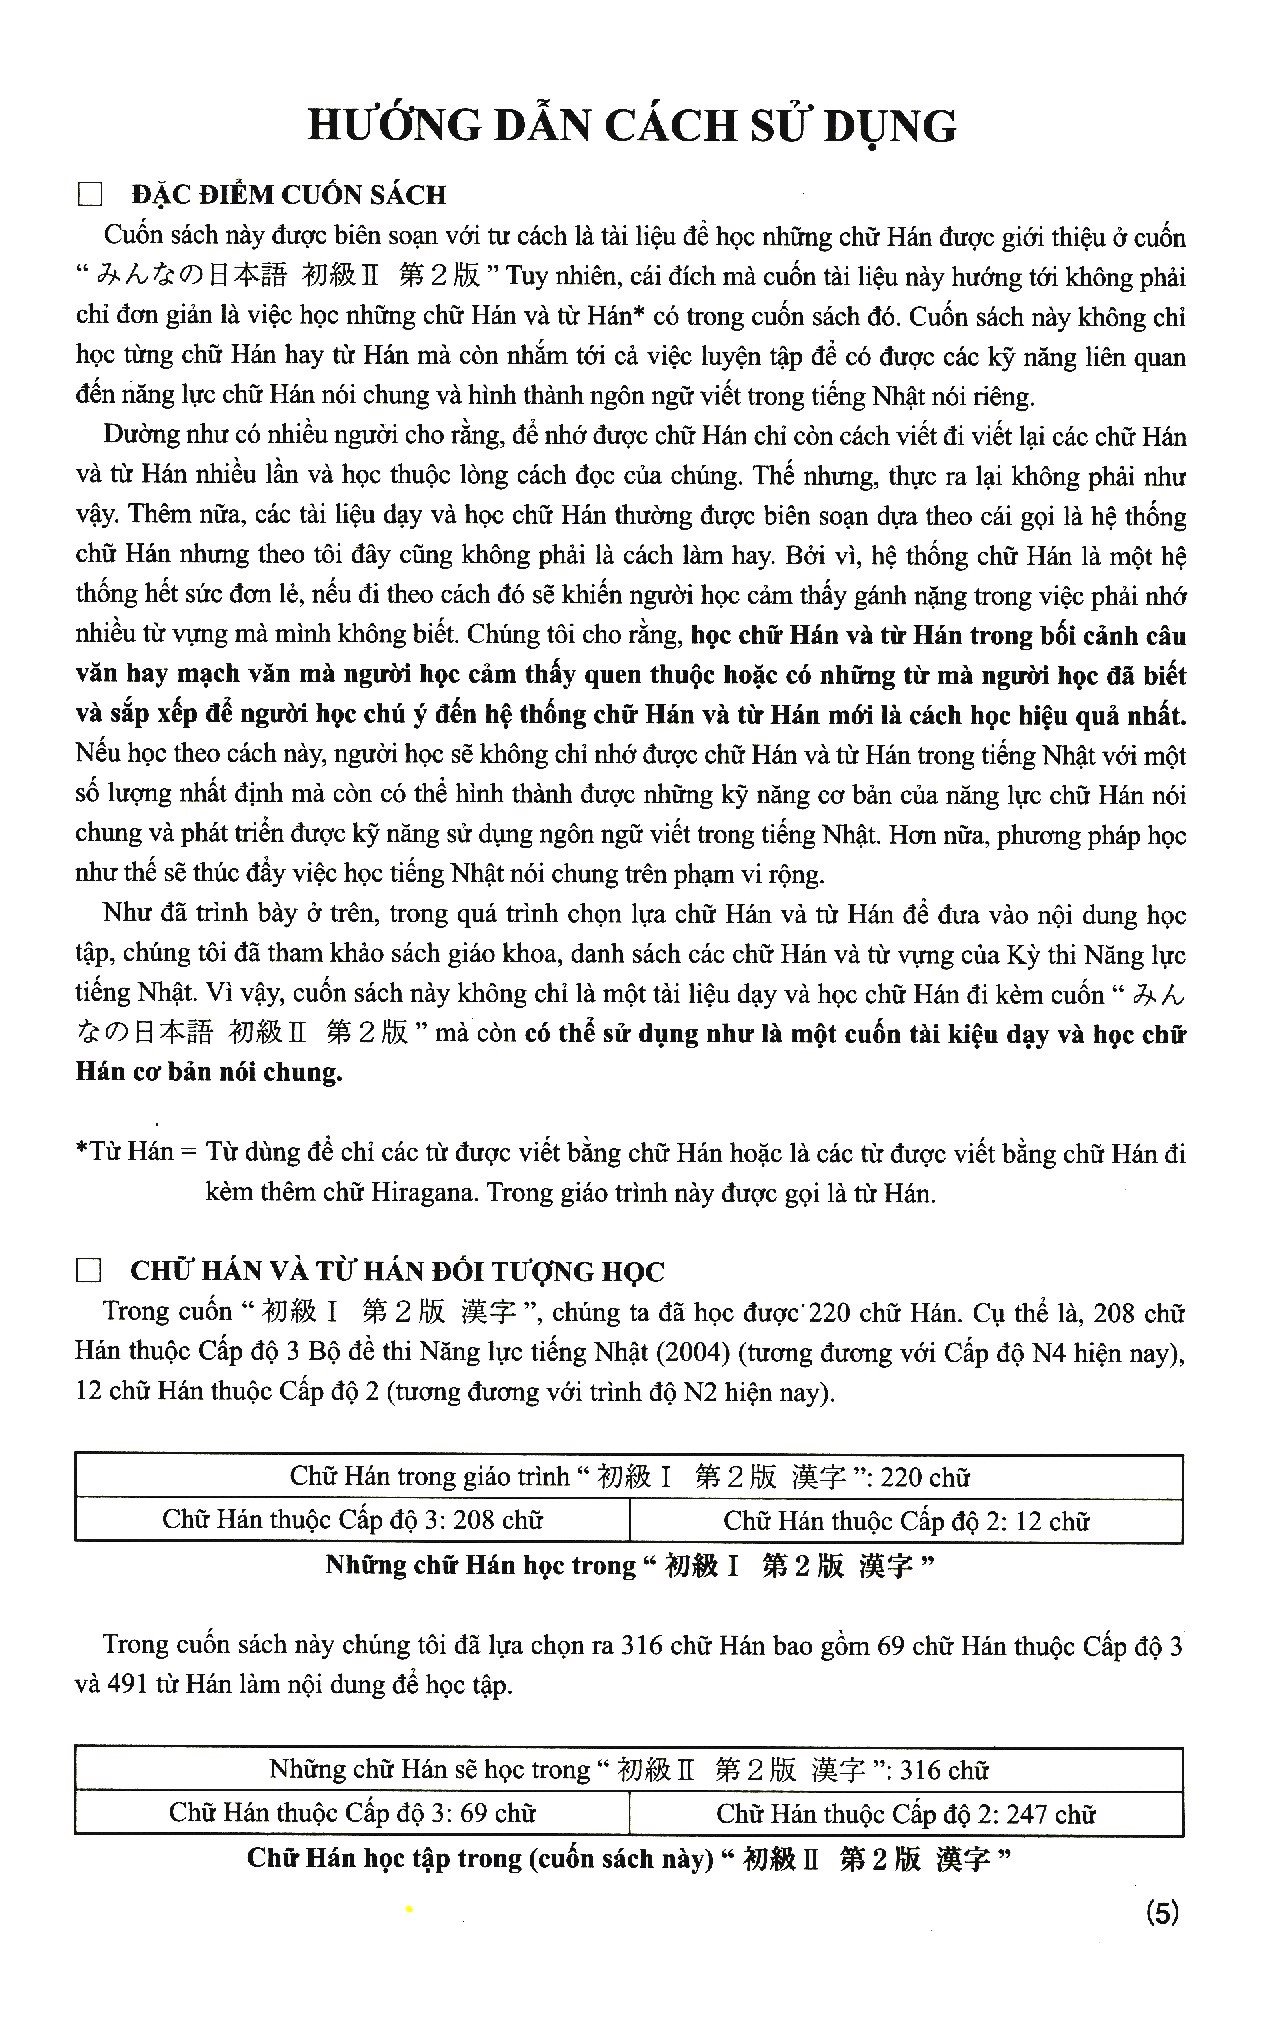 Tiếng Nhật Cho Mọi Người - Sơ Cấp 2 - Hán Tự - Bản Tiếng Việt Bản Mới PDF